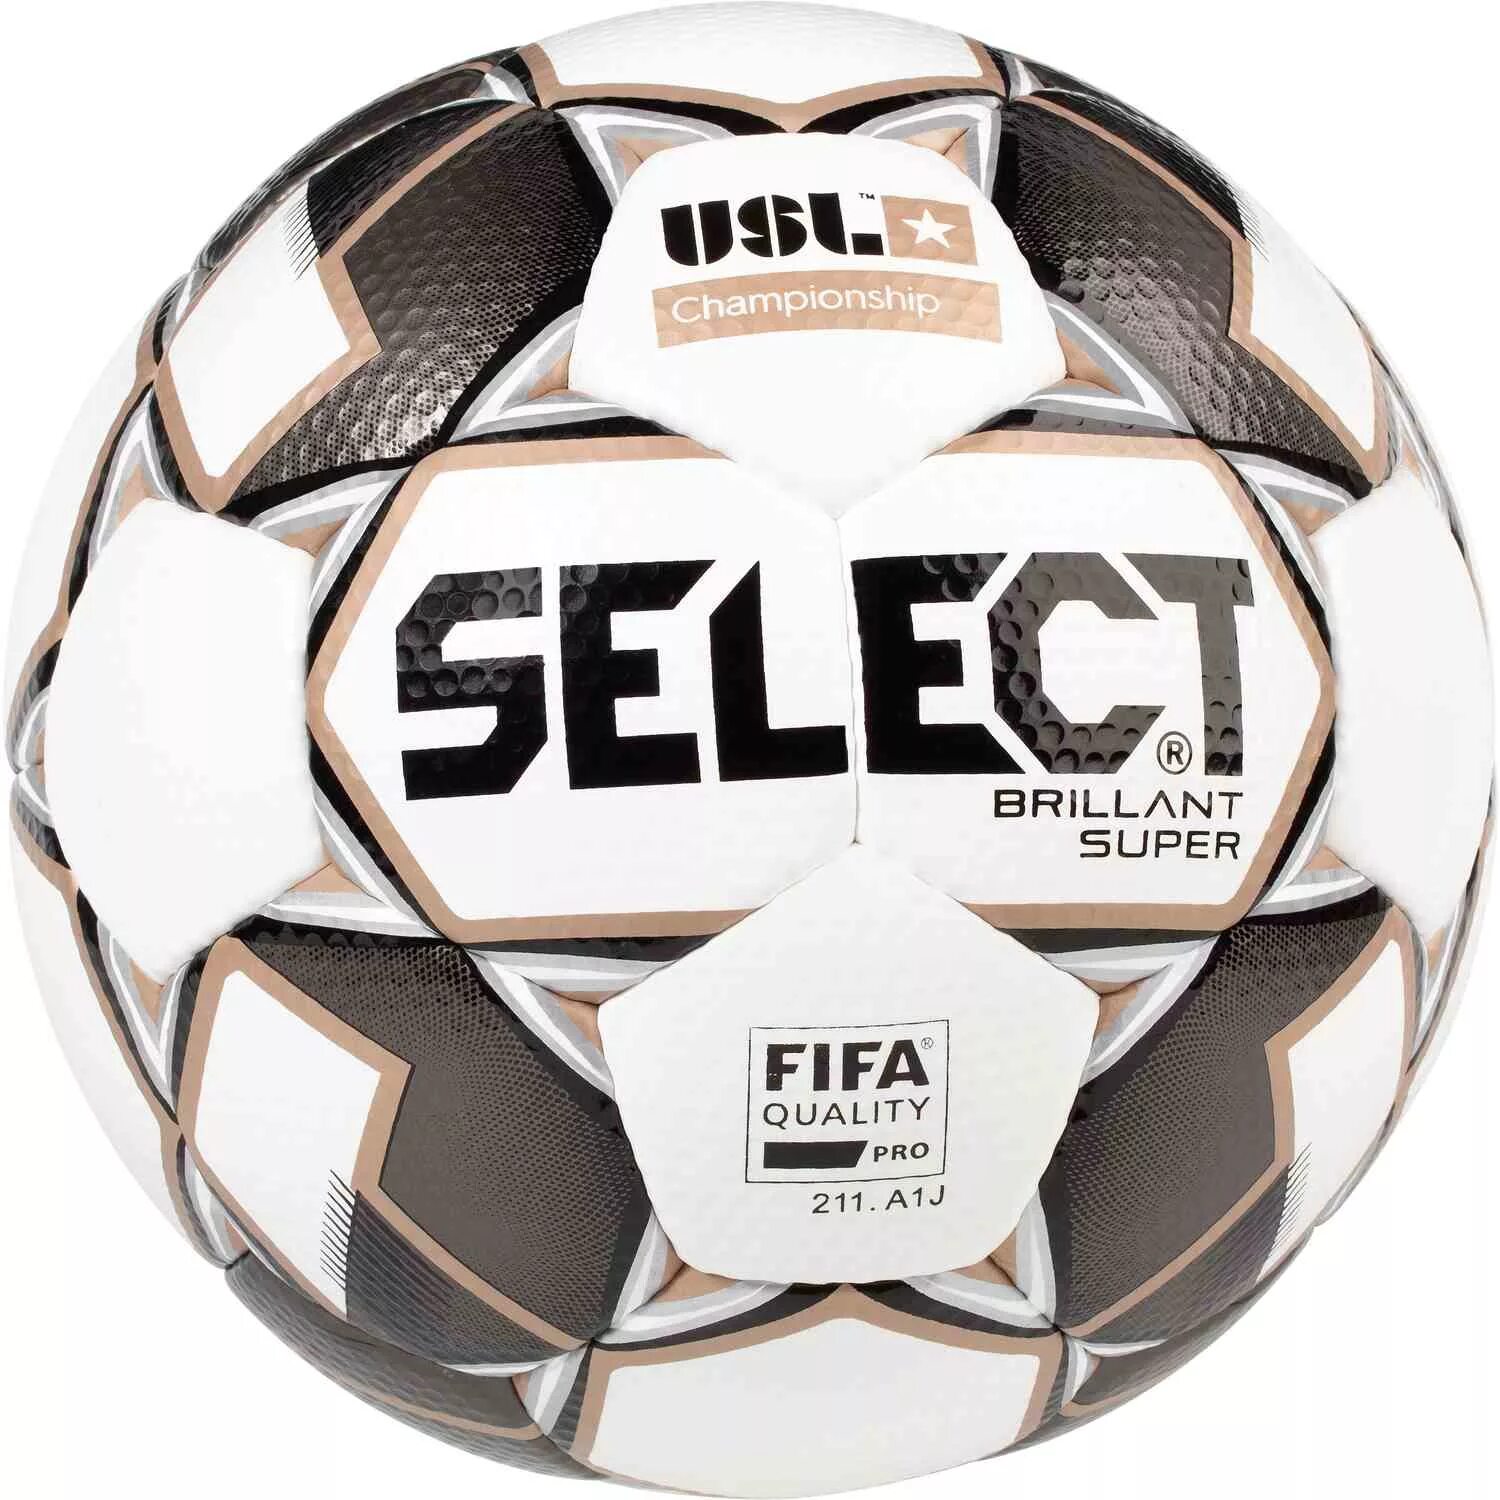 Select brillant super мяч. Мяч select USL brillant super. Мяч футбольный select Brilliant super Size 5. Select 5 brillant Brilliant super. Футбольный мяч select